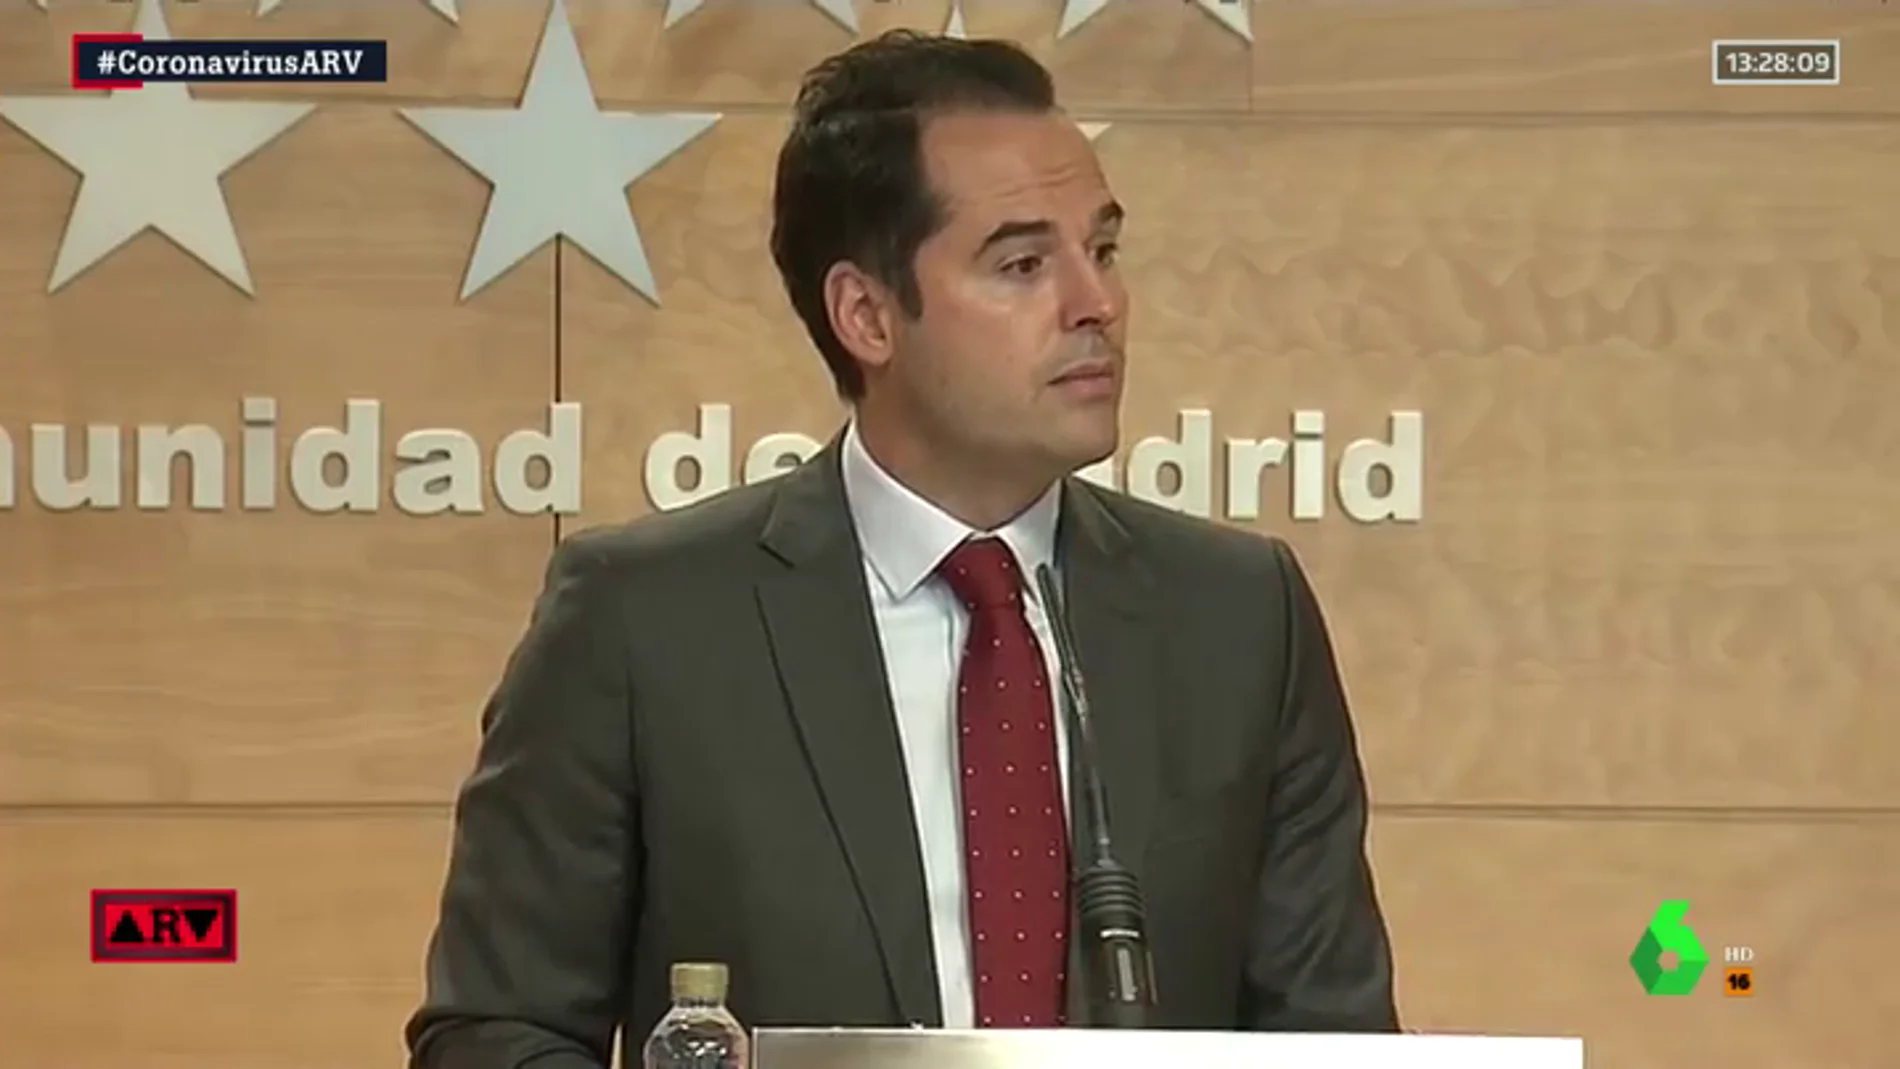 El vicepresidente madrileño, Ignacio Aguado